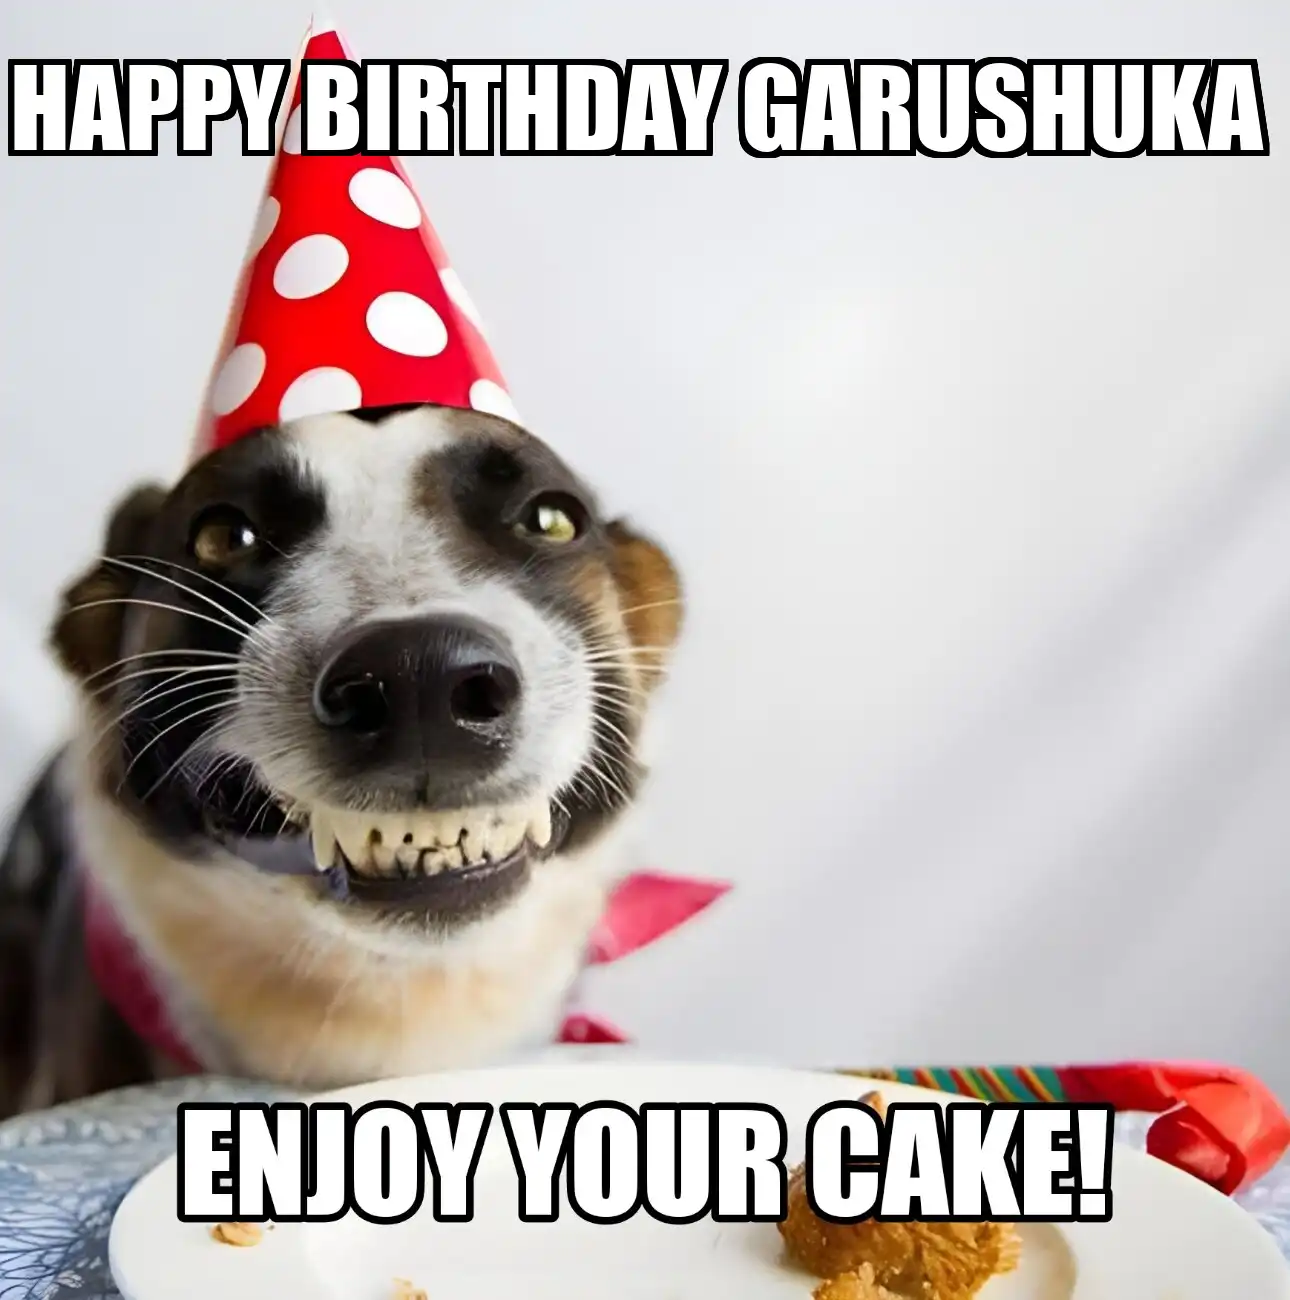 Happy Birthday Garushuka Enjoy Your Cake Dog Meme